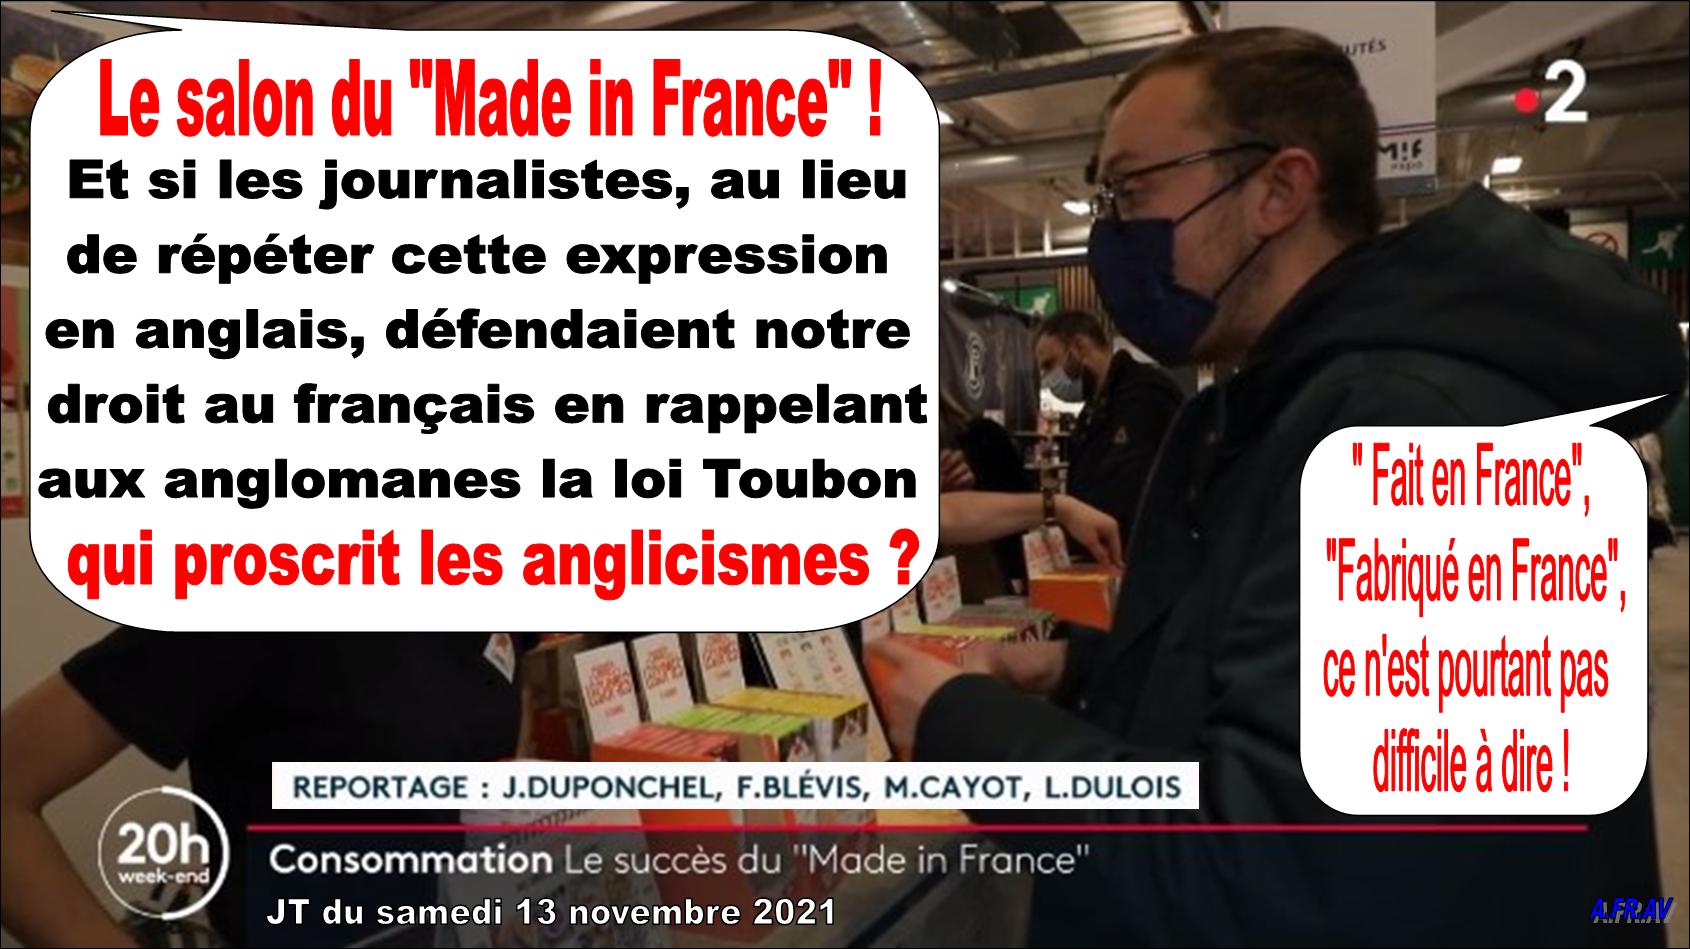 Salon du Made in France, Julien Duponchel, 20h de France 2